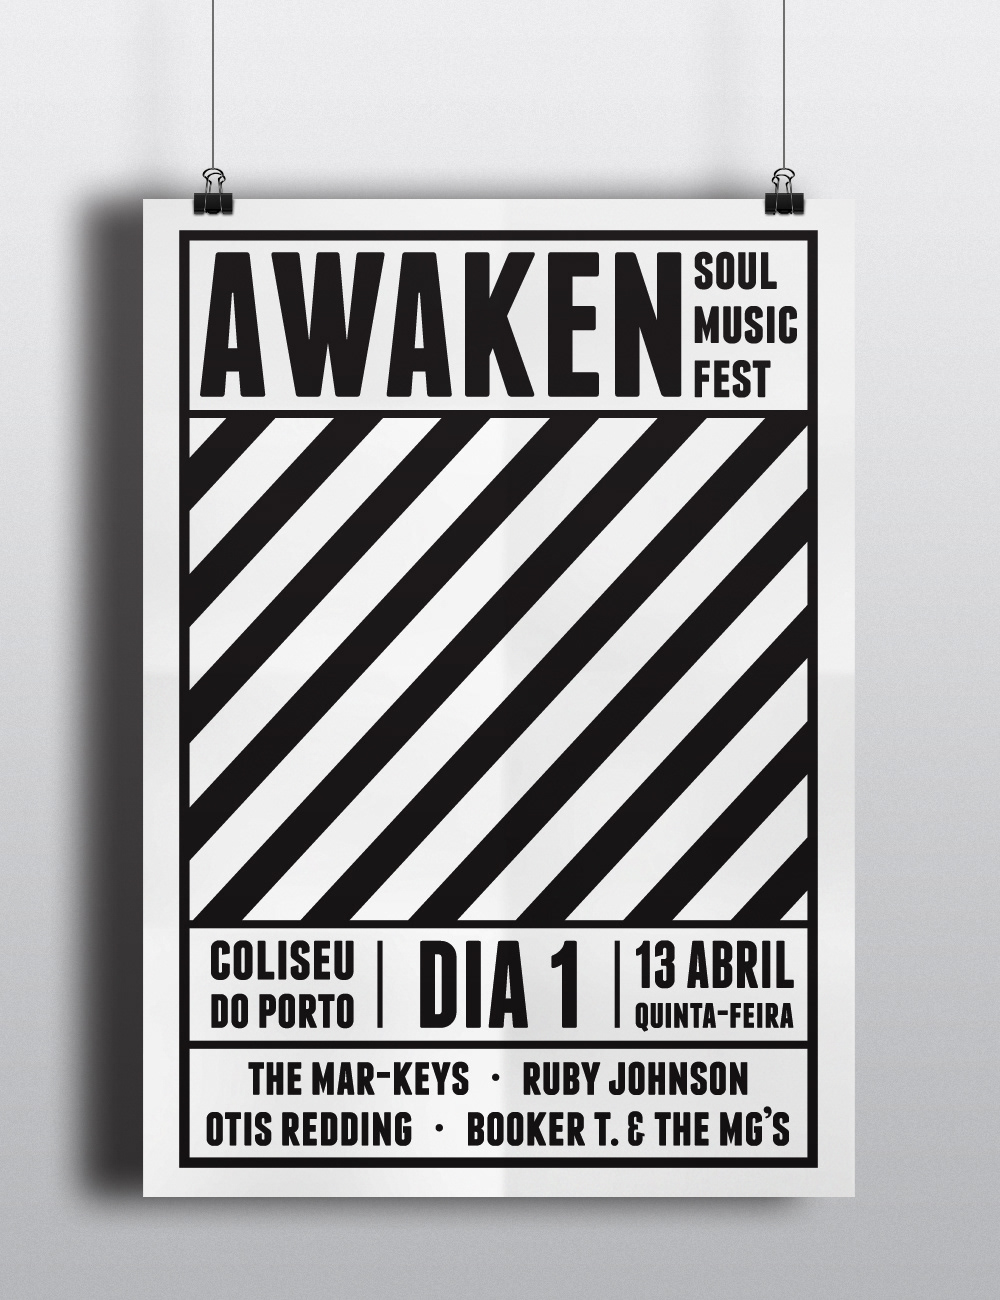 Music Festival awaken soul posters